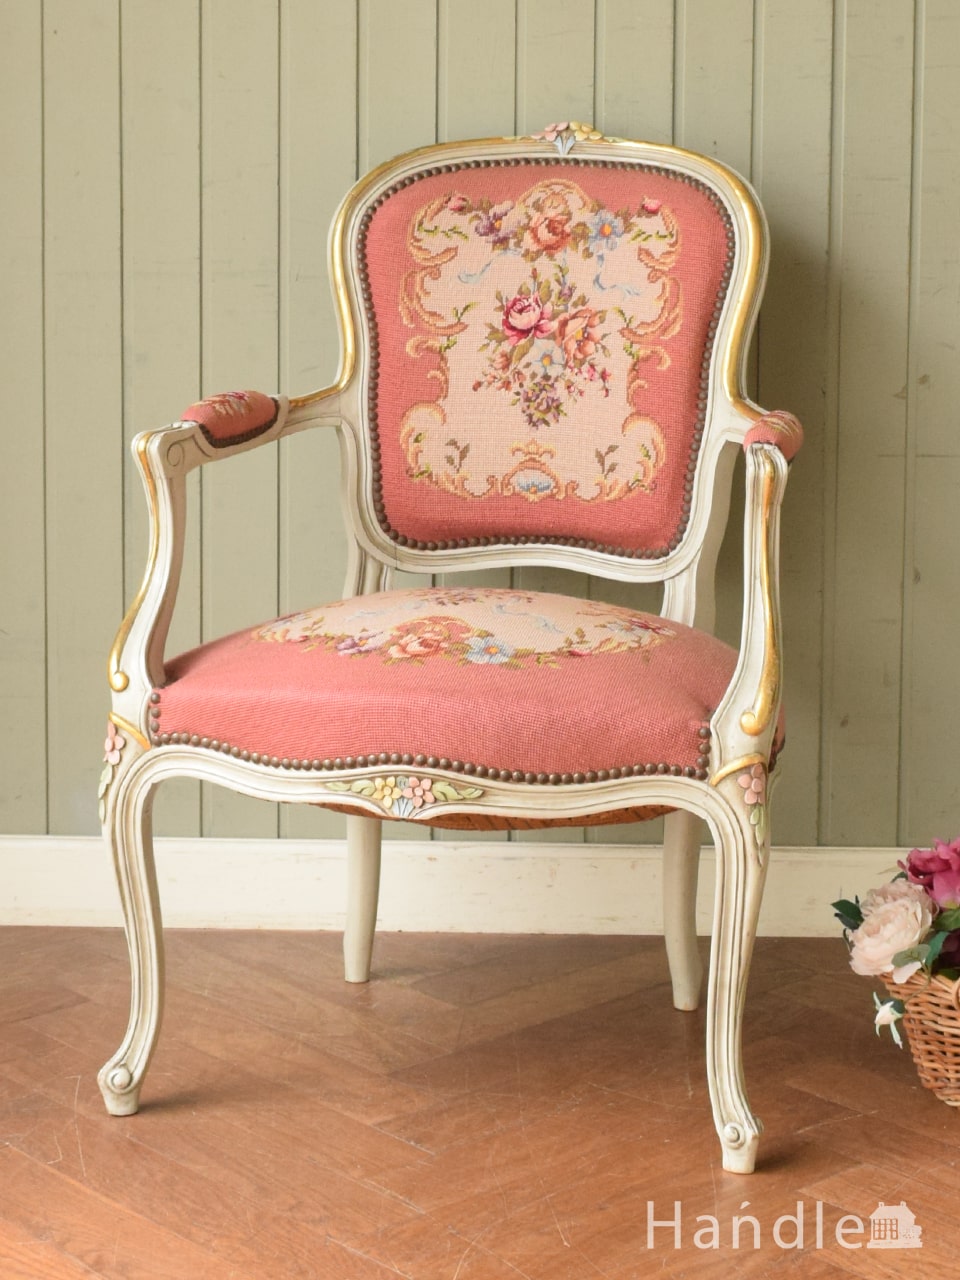 お花のブーケの刺繍が美しいアンティーク椅子、エレガントなプチポワンのアームチェア (j-737-c)